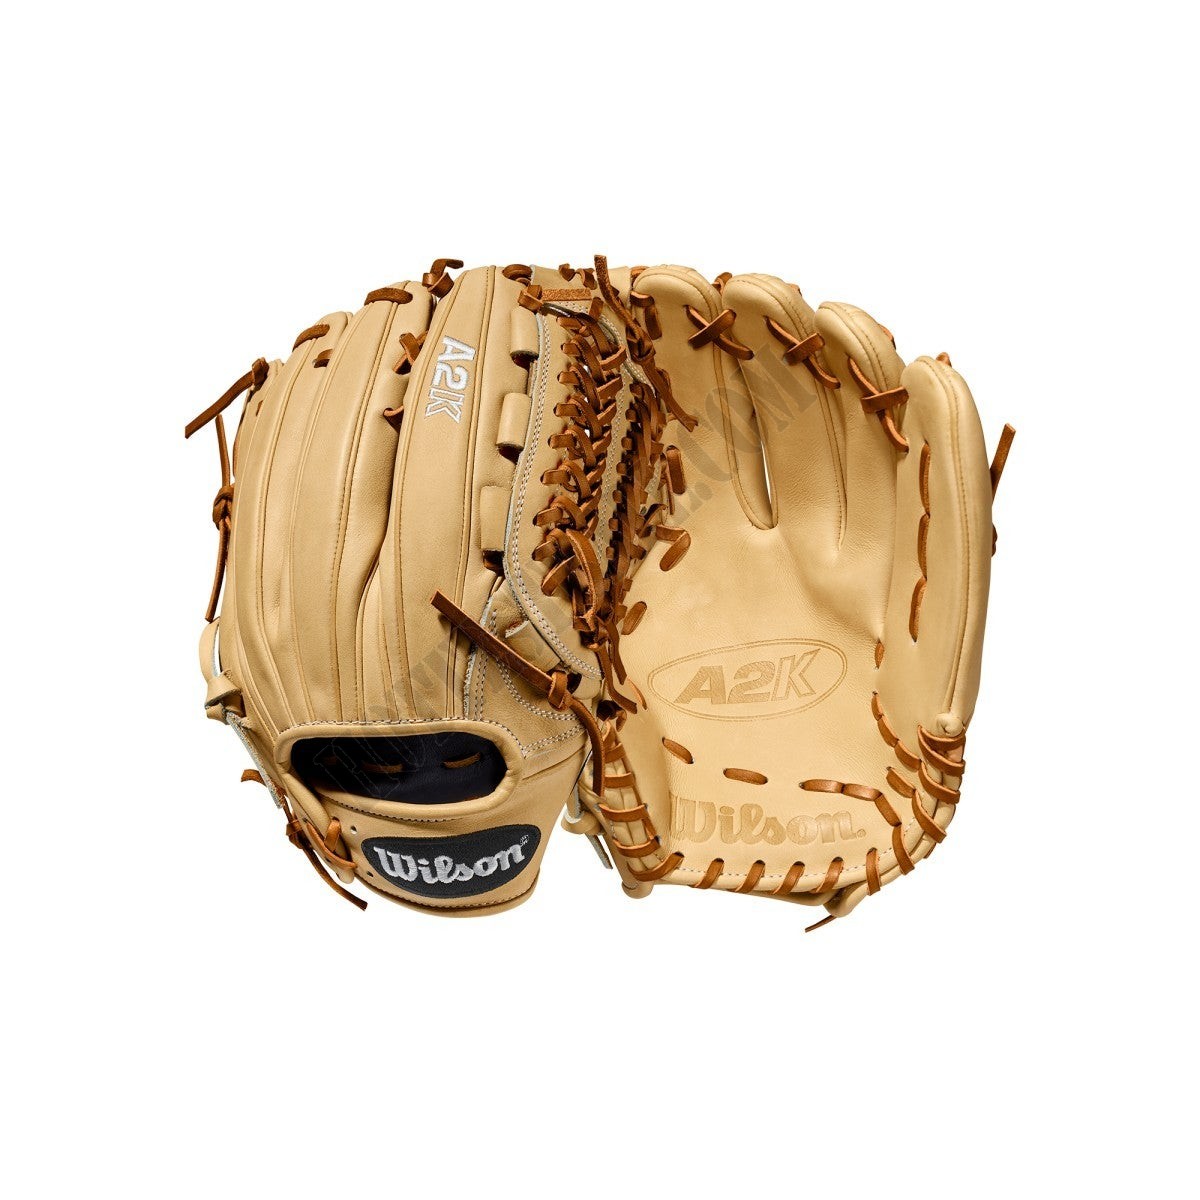 2020 A2K D33 11.75" Pitcher's Baseball Glove ● Wilson Promotions - -0